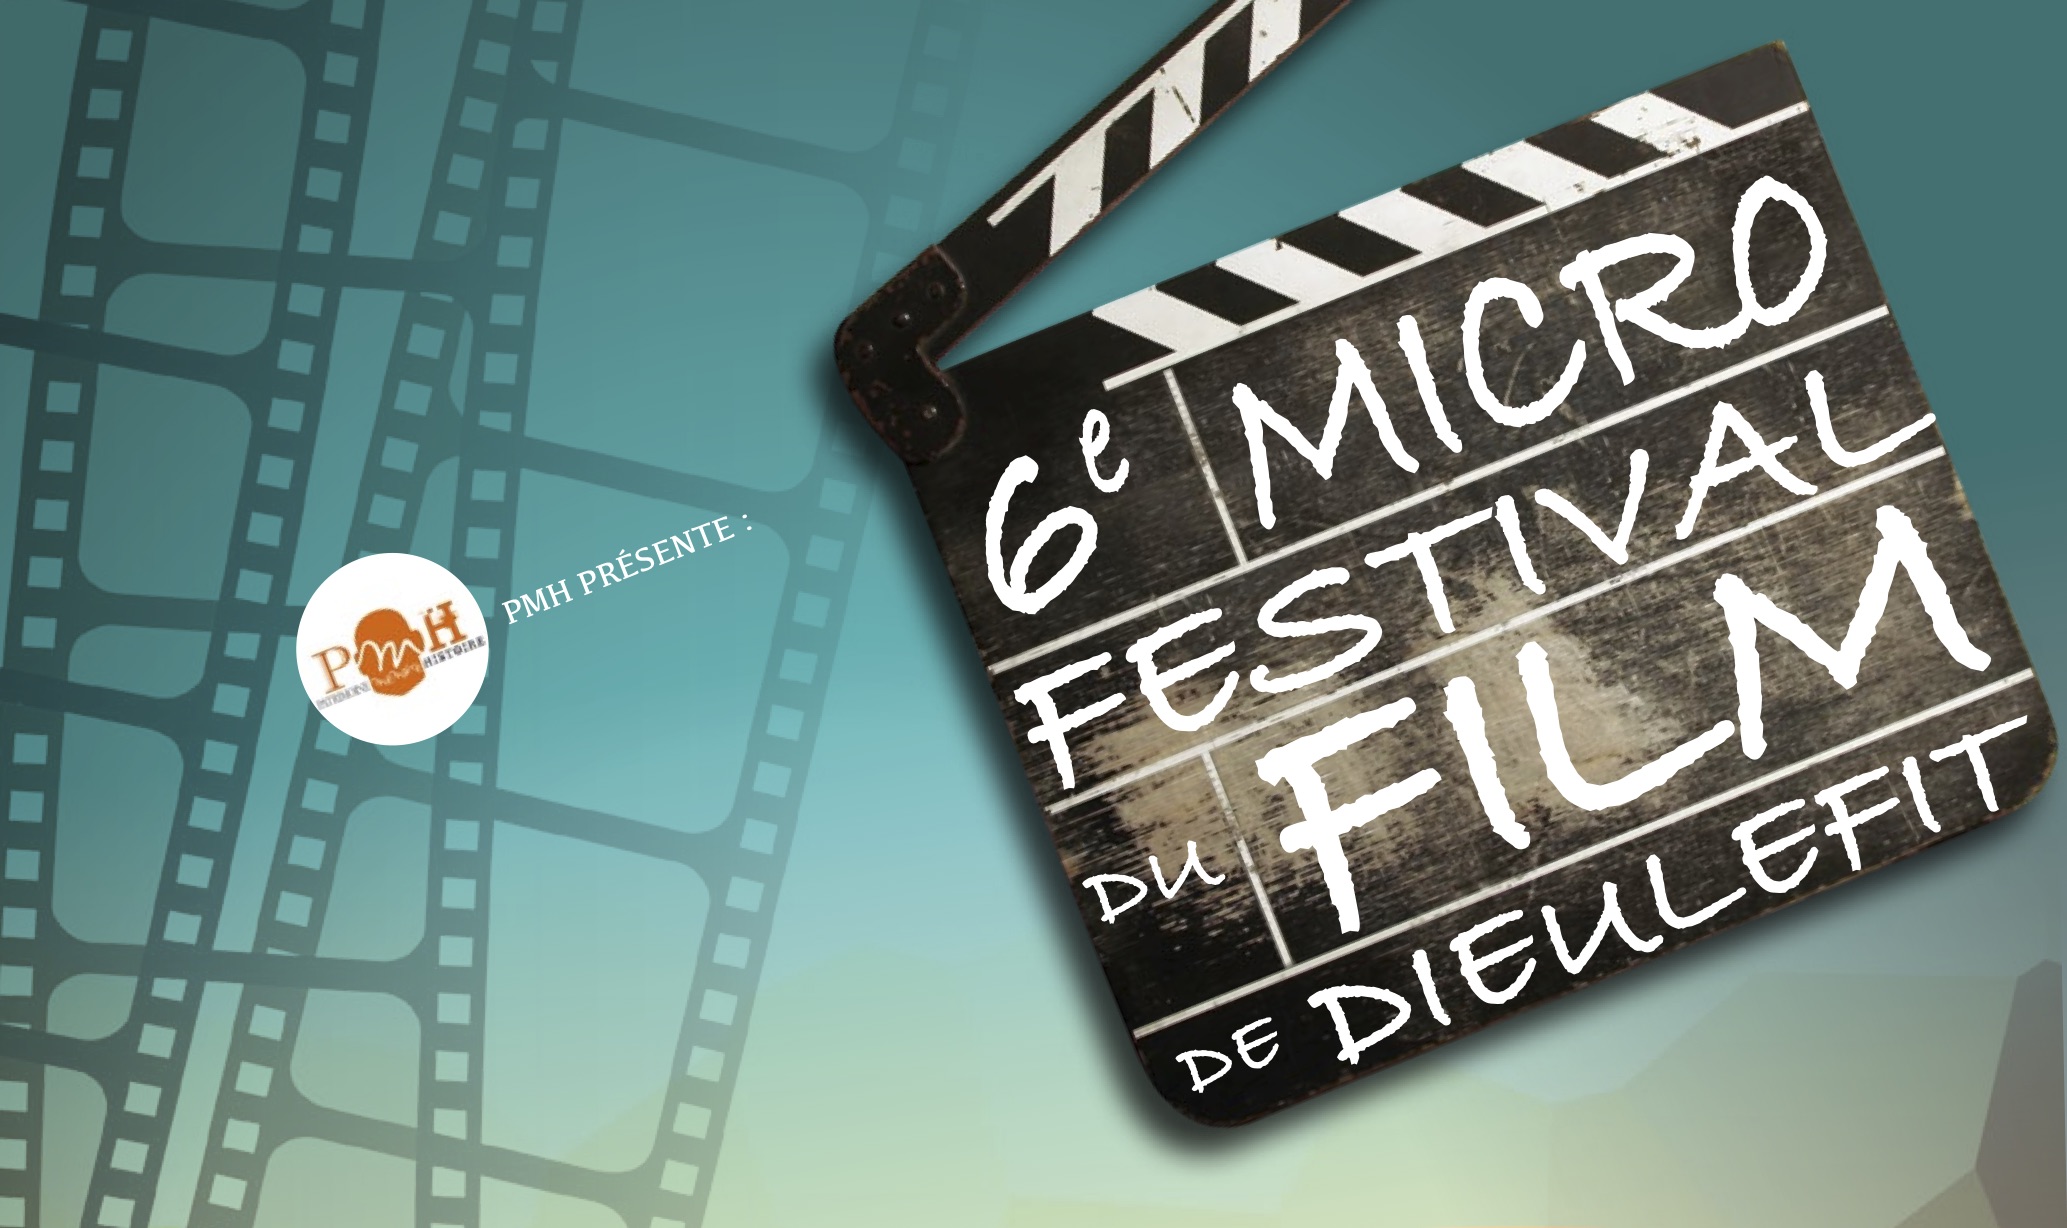 Mucrio festival du film dieulefit 2021